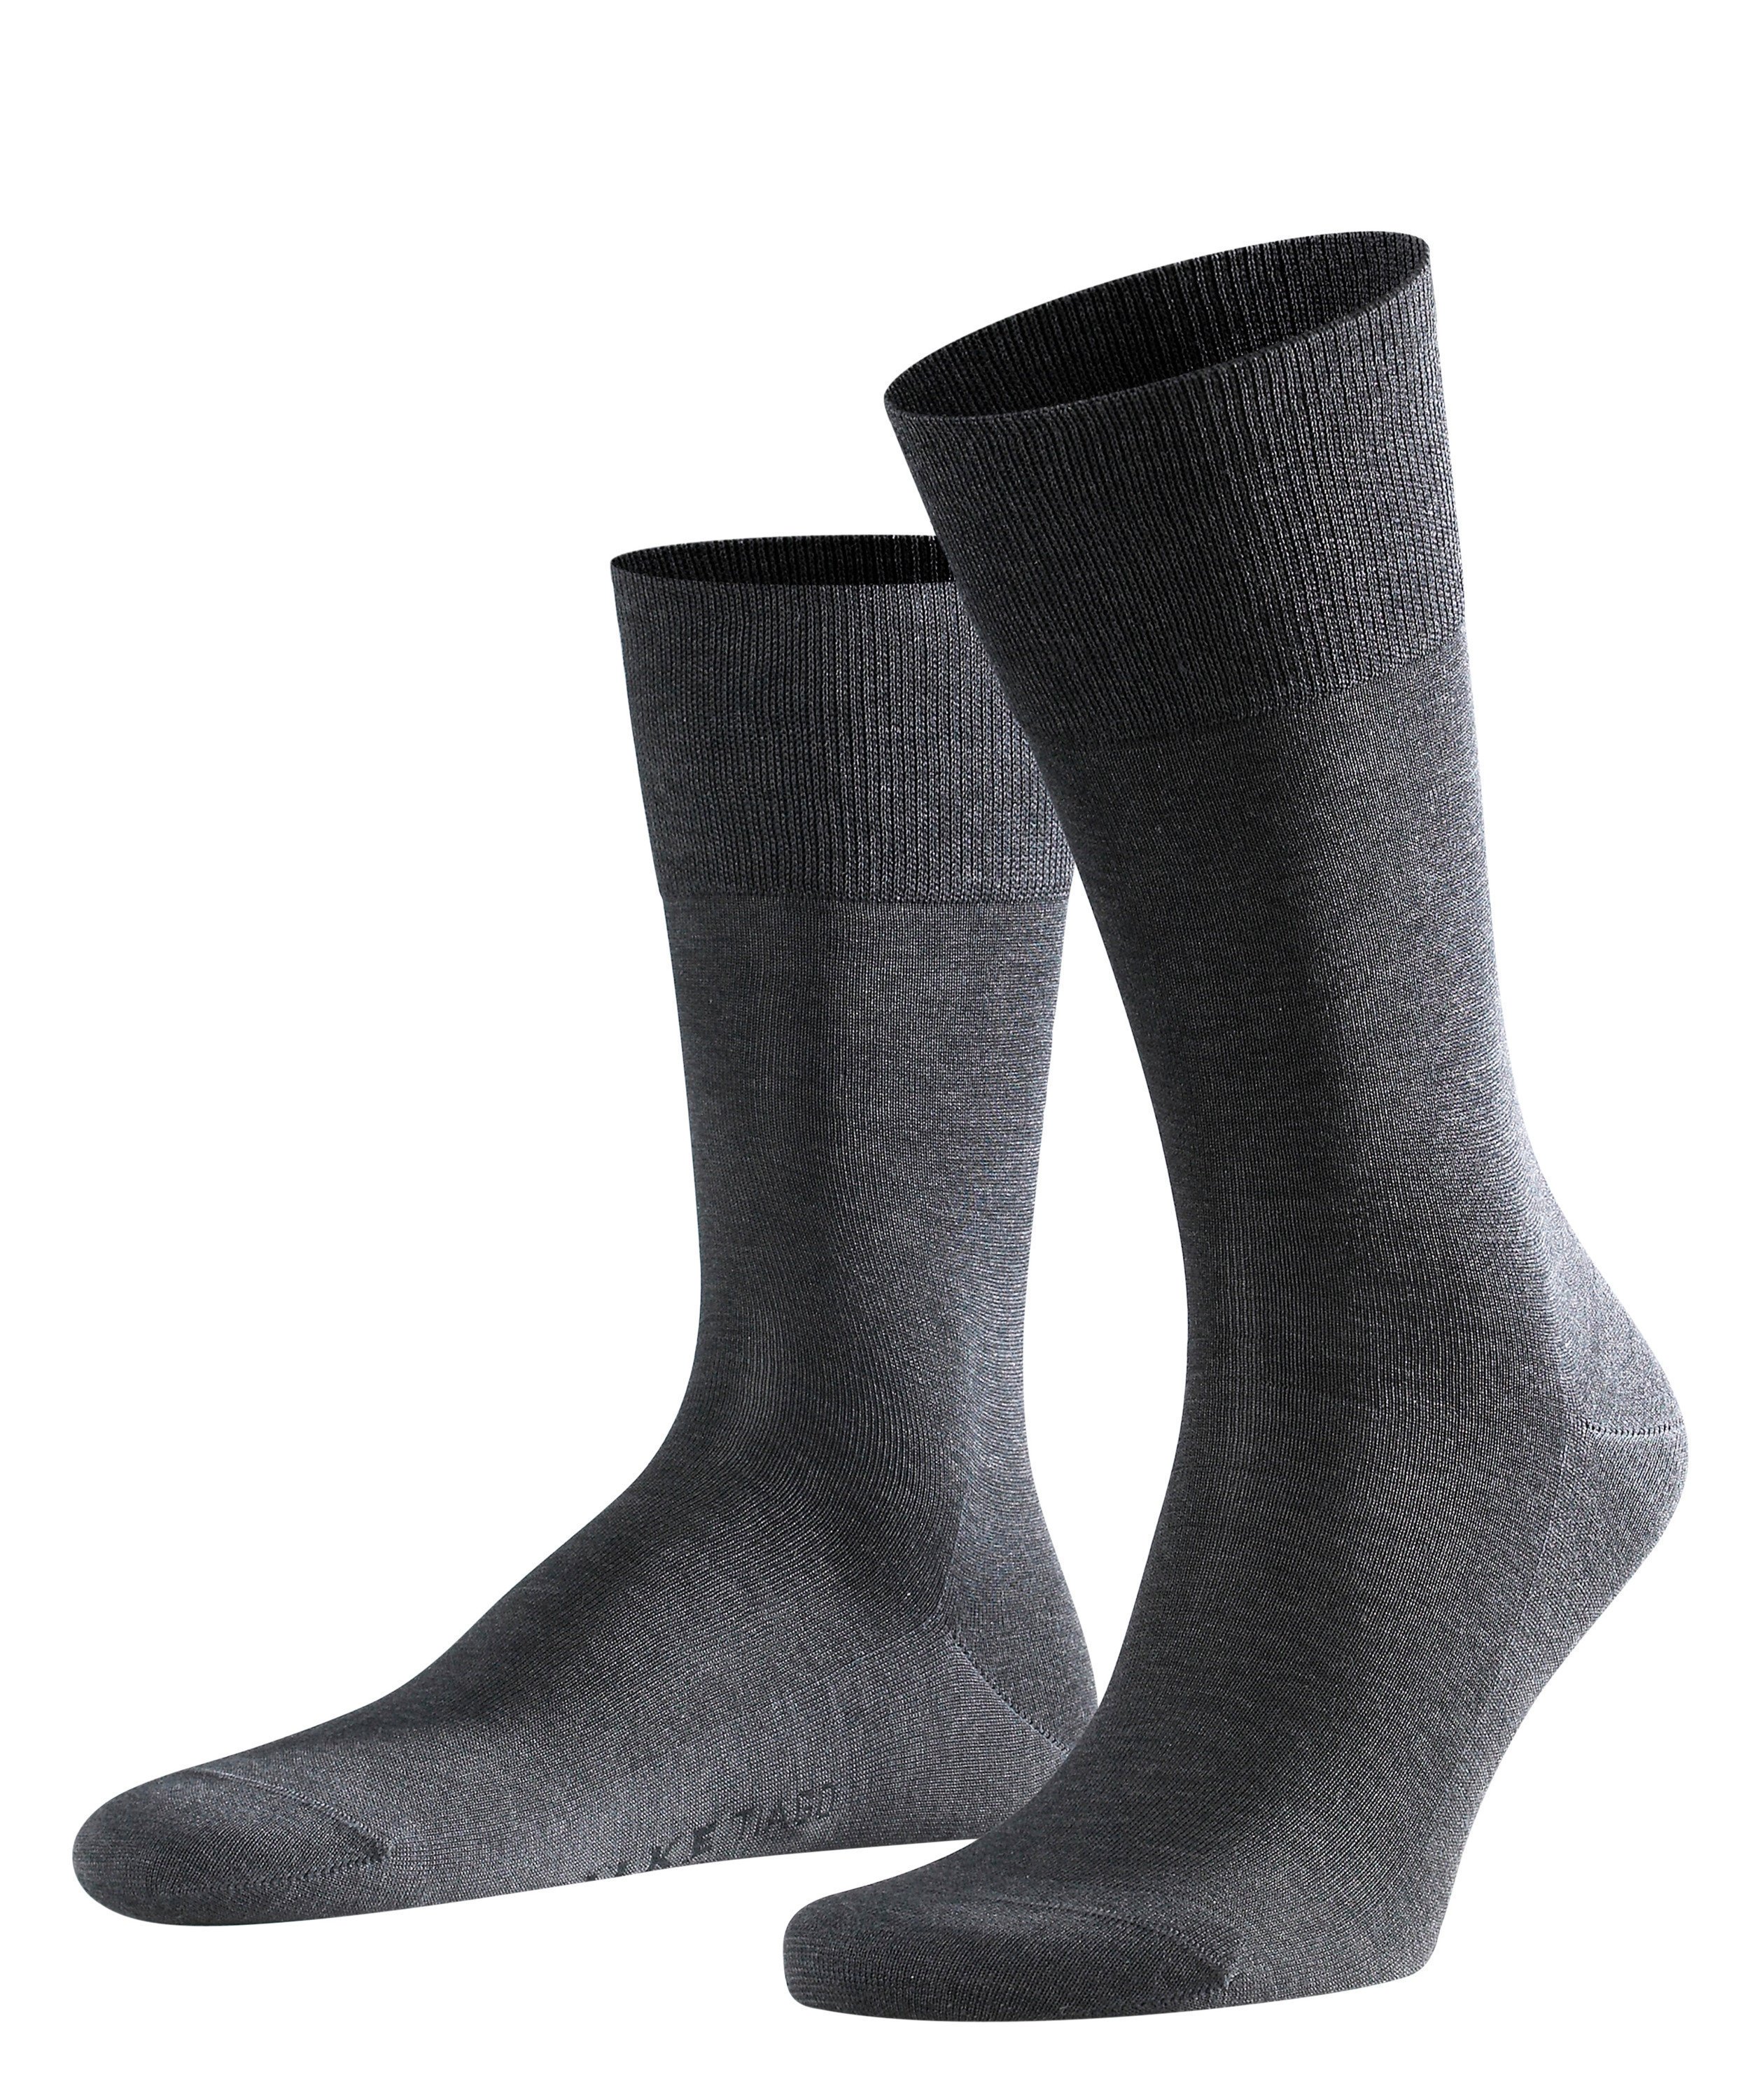 Хлопковые носки FALKE Tiago 14662 3190 - купить с доставкой по России, оплата при получении